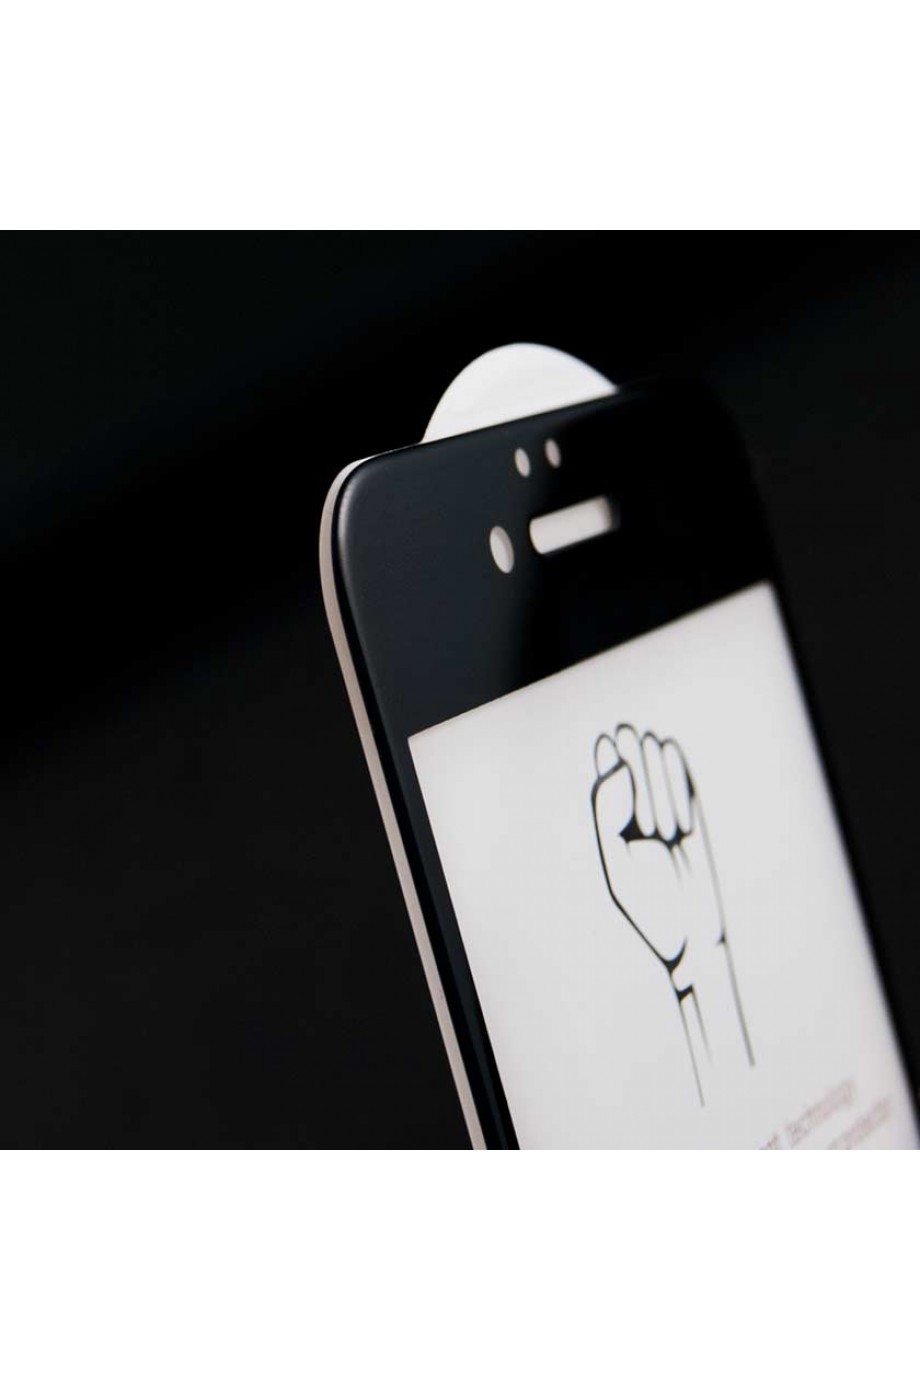 Защитное стекло 5D Mikomo для iPhone 6, черная рамка, полный клей